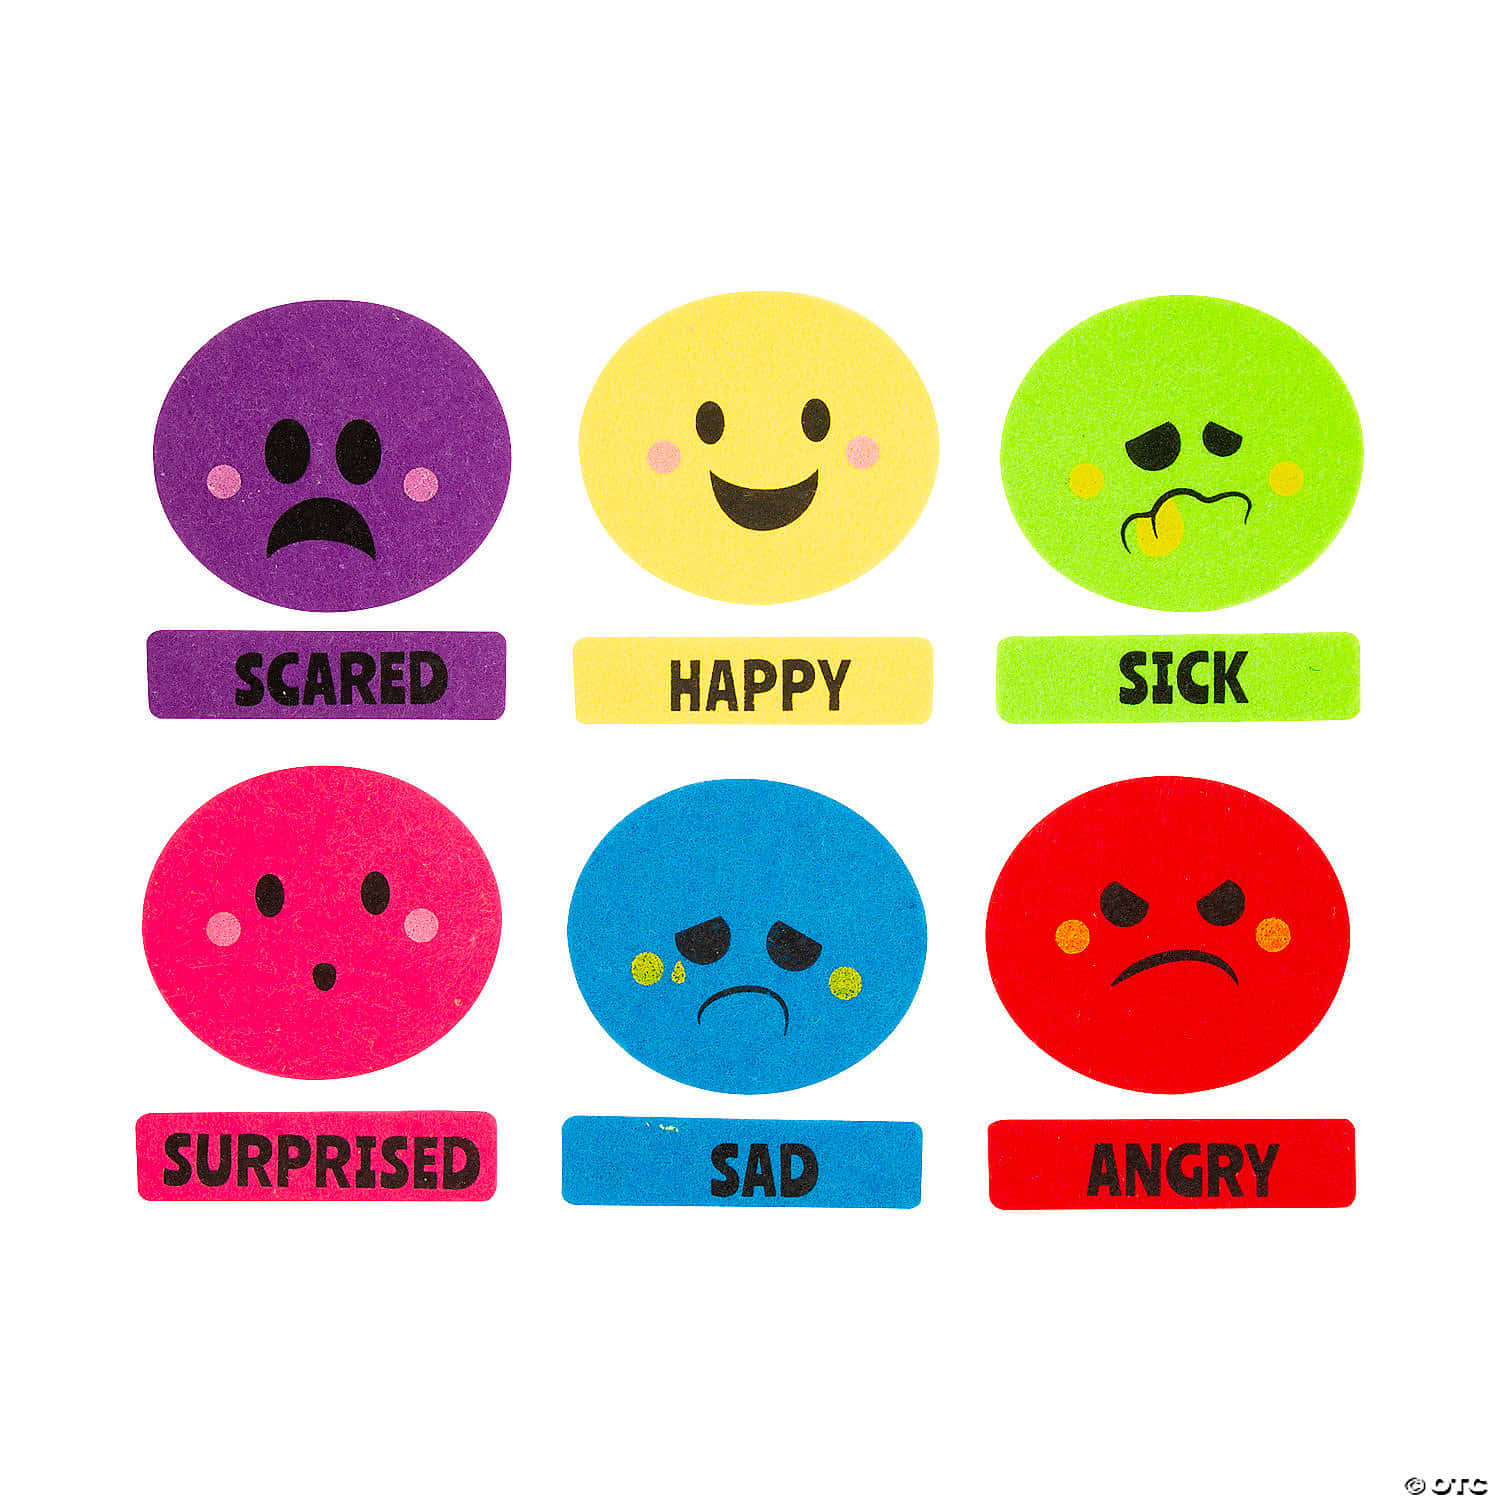 Unconjunto De Emoticonos Coloridos Con Las Palabras Triste, Asustado Y Molesto